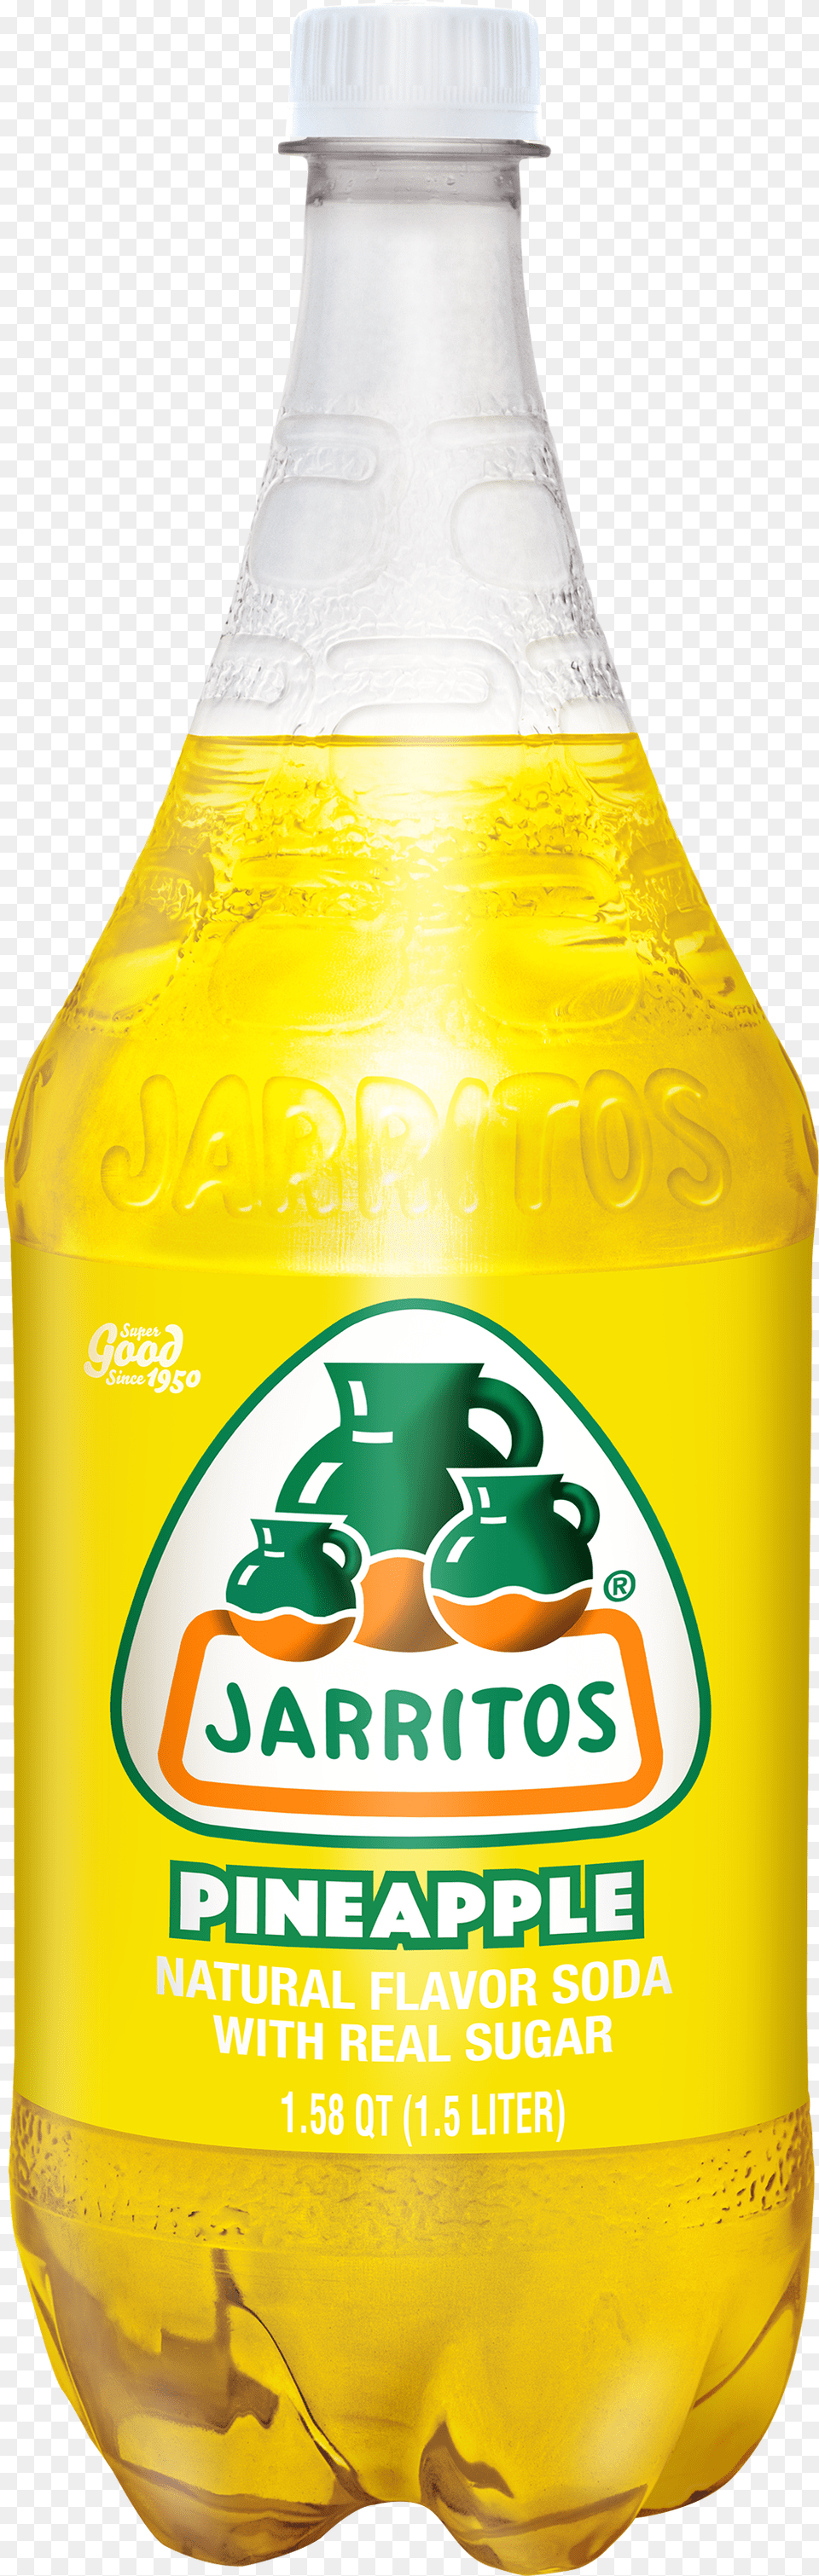 Jarritos Pineapple Soda 125 Oz, Food, Ketchup, Beverage, Bottle Png